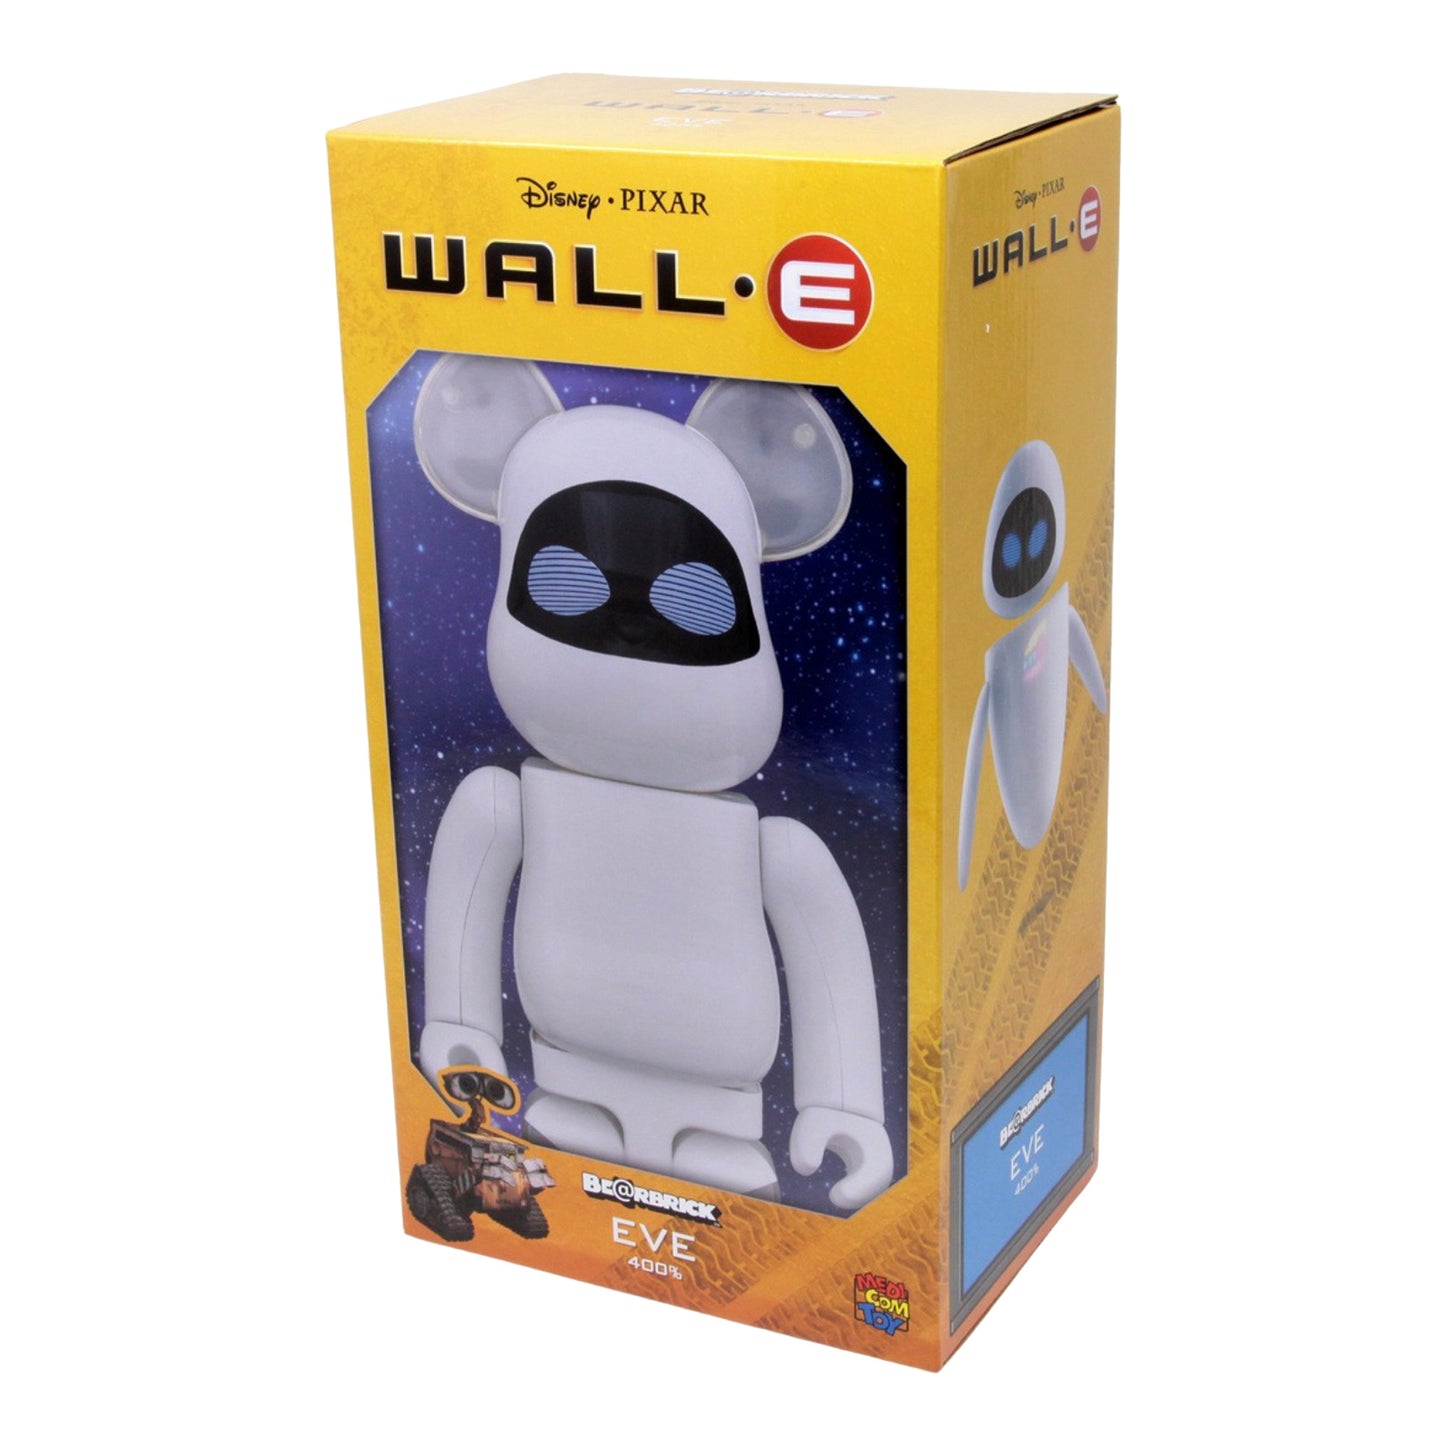 MEDICOM TOY: BE@RBRICK - WALL-E - Eve 400%